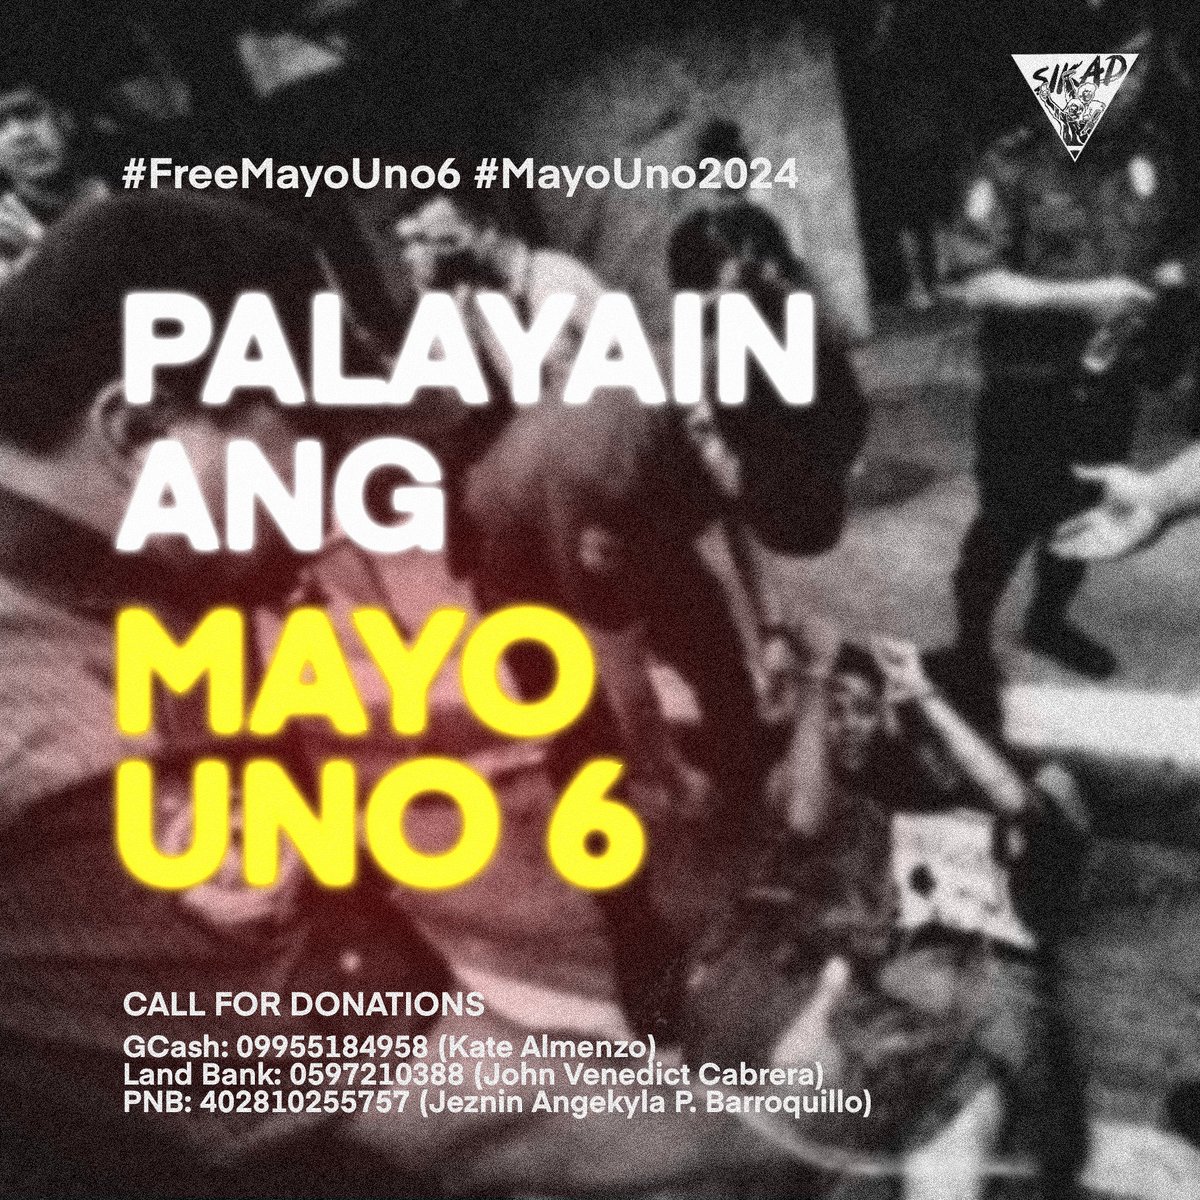 Kundenahin ang PNP sa iligal at marahas na pag-aresto sa Mayo Uno 6! 

NAKIKIISA ang SIKAD sa pagkundena sa marahas na pag-aresto ng PNP sa anim na aktibista noong #MayoUno2024. 

1/8